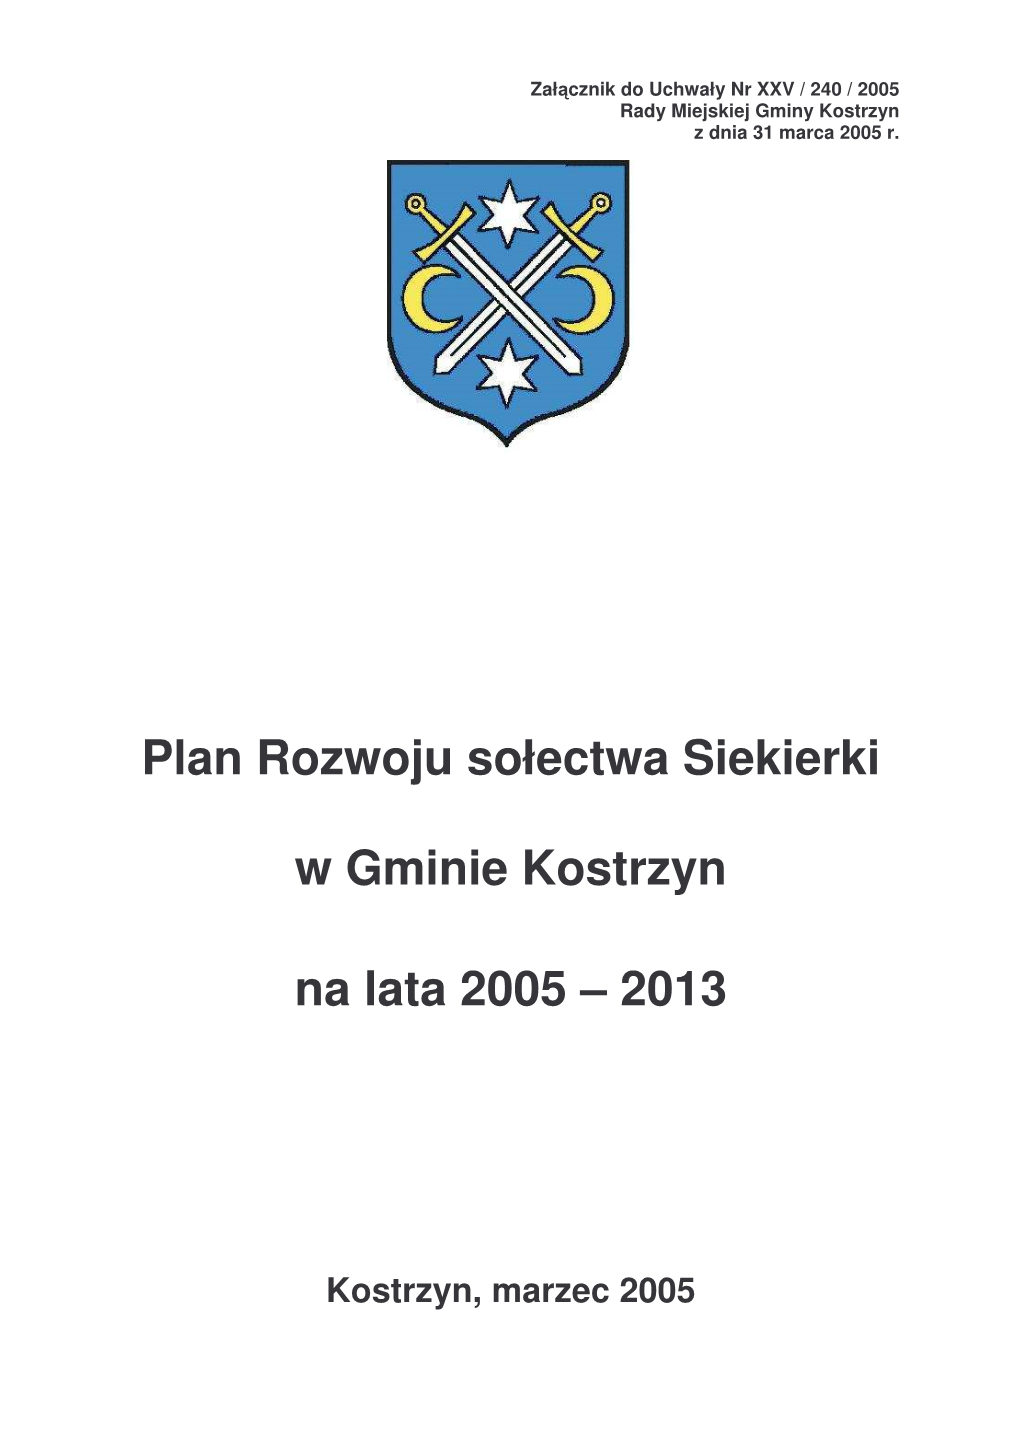 Plan Rozwoju Sołectwa Siekierki W Gminie Kostrzyn Na Lata 2005 – 2013